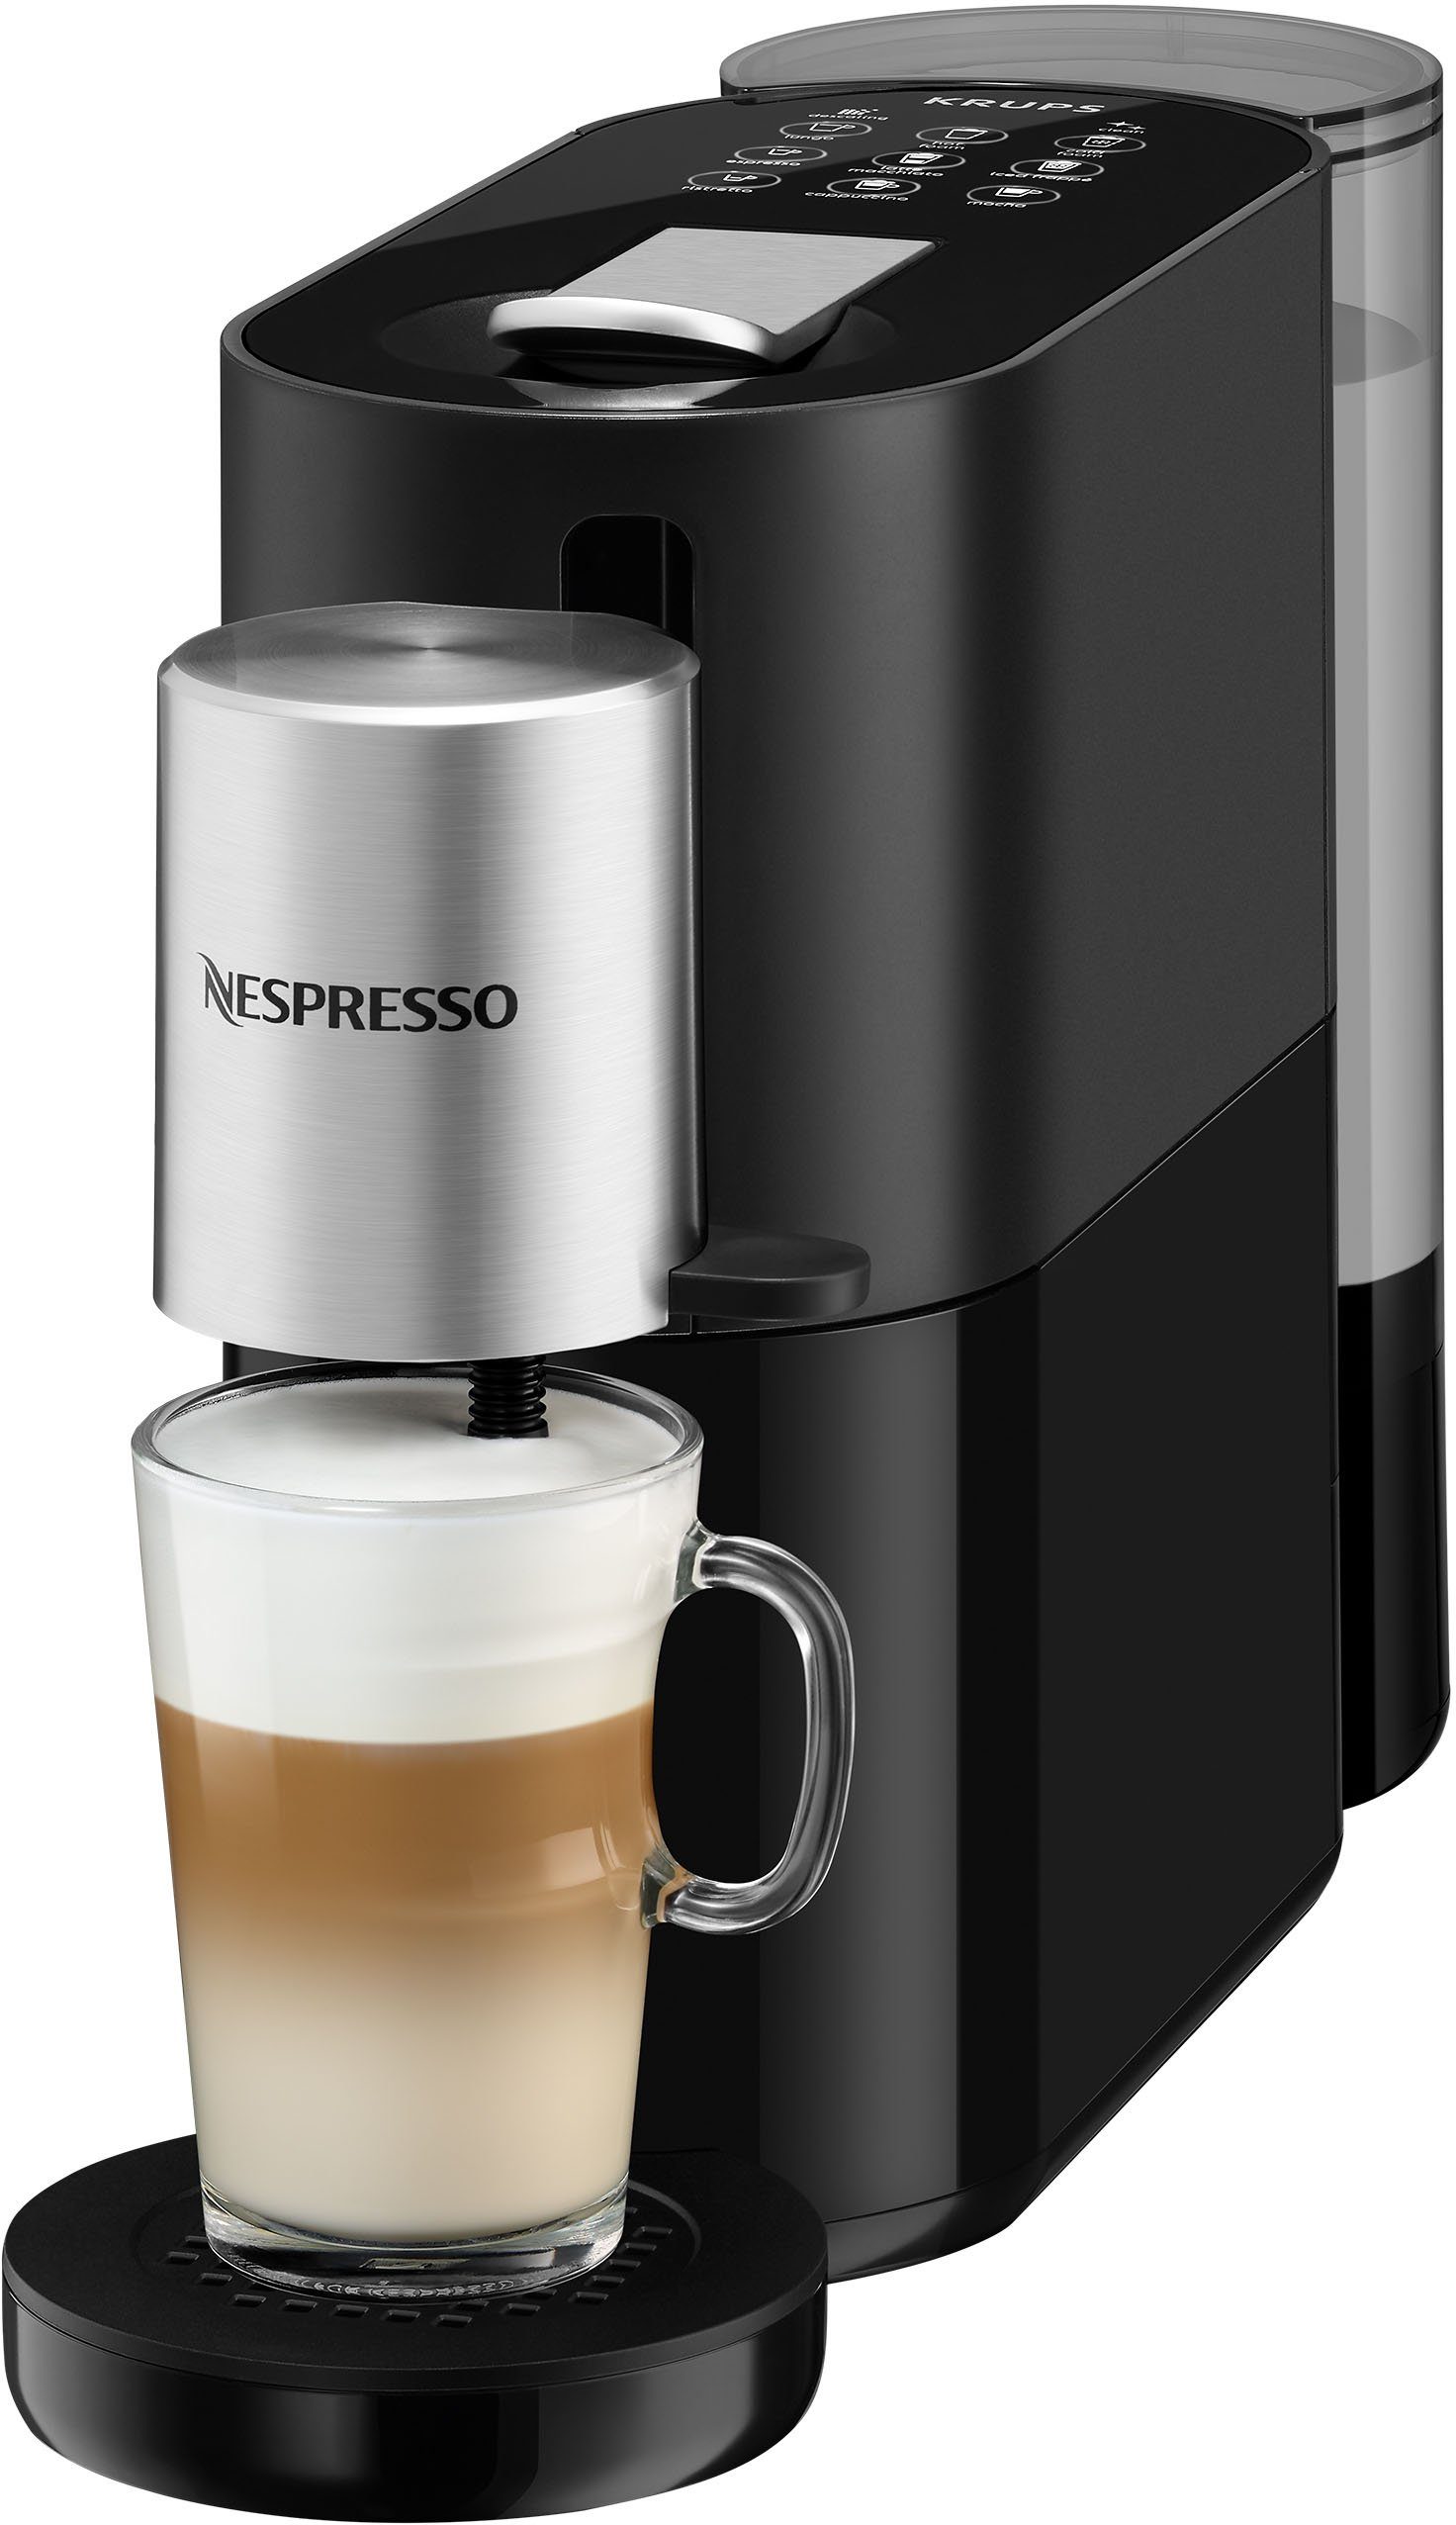 Atelier 1 von 19 L, Wassertank: Nespresso Bar Nespresso inkl. XN8908 Druck, Kapseln Glastasse Kapselmaschine + Krups,